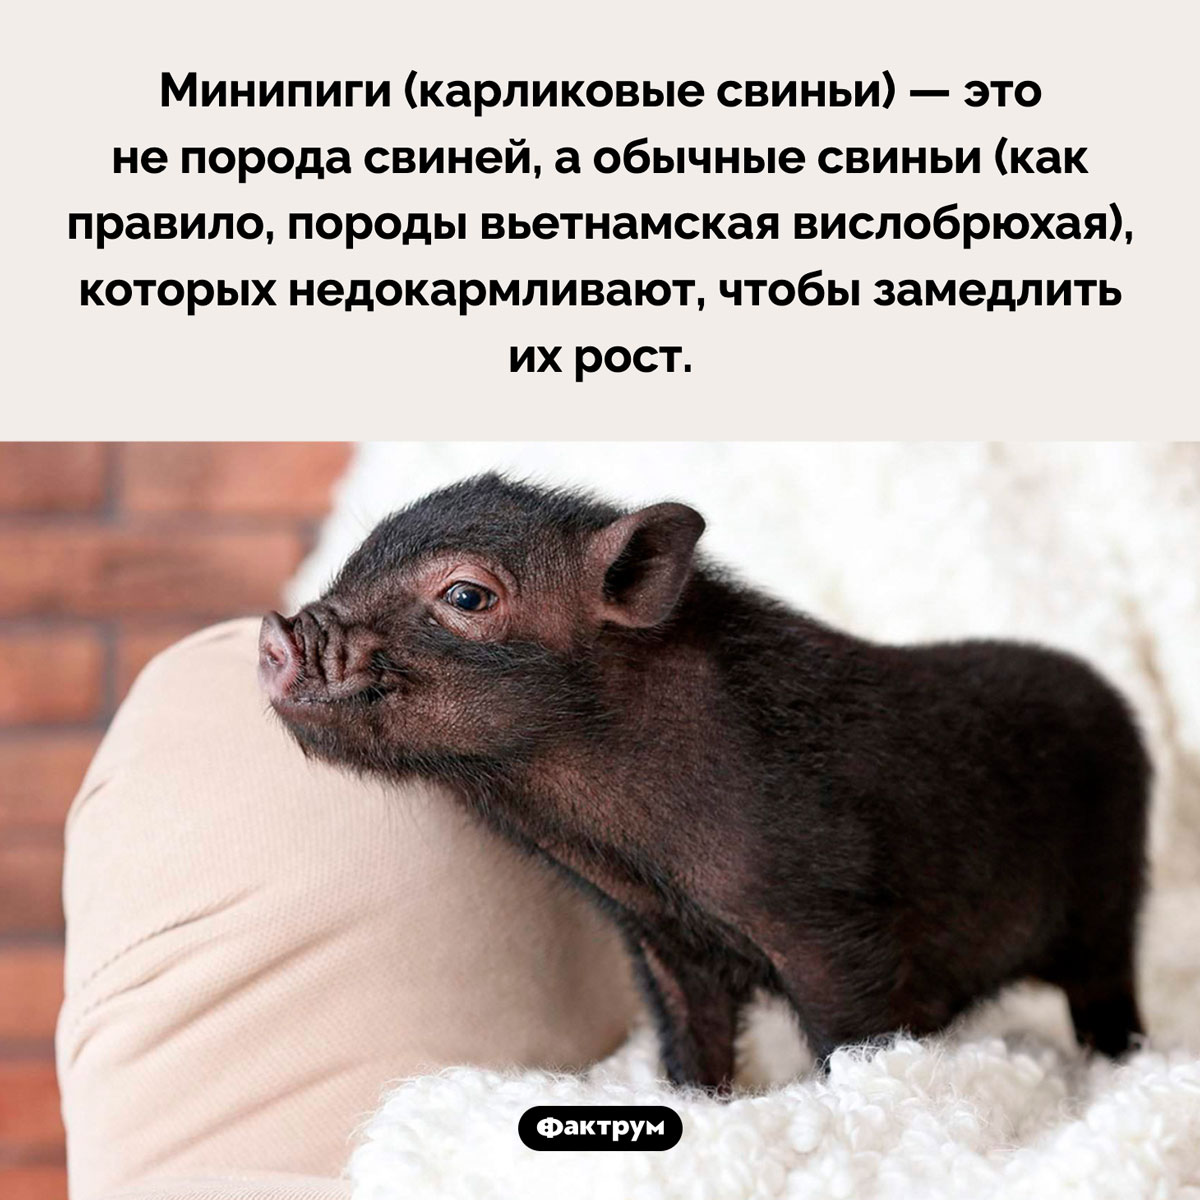 Откуда берутся минипиги. Минипиги (карликовые свиньи) — это не порода свиней, а обычные свиньи (как правило, породы вьетнамская вислобрюхая), которых недокармливают, чтобы замедлить их рост.